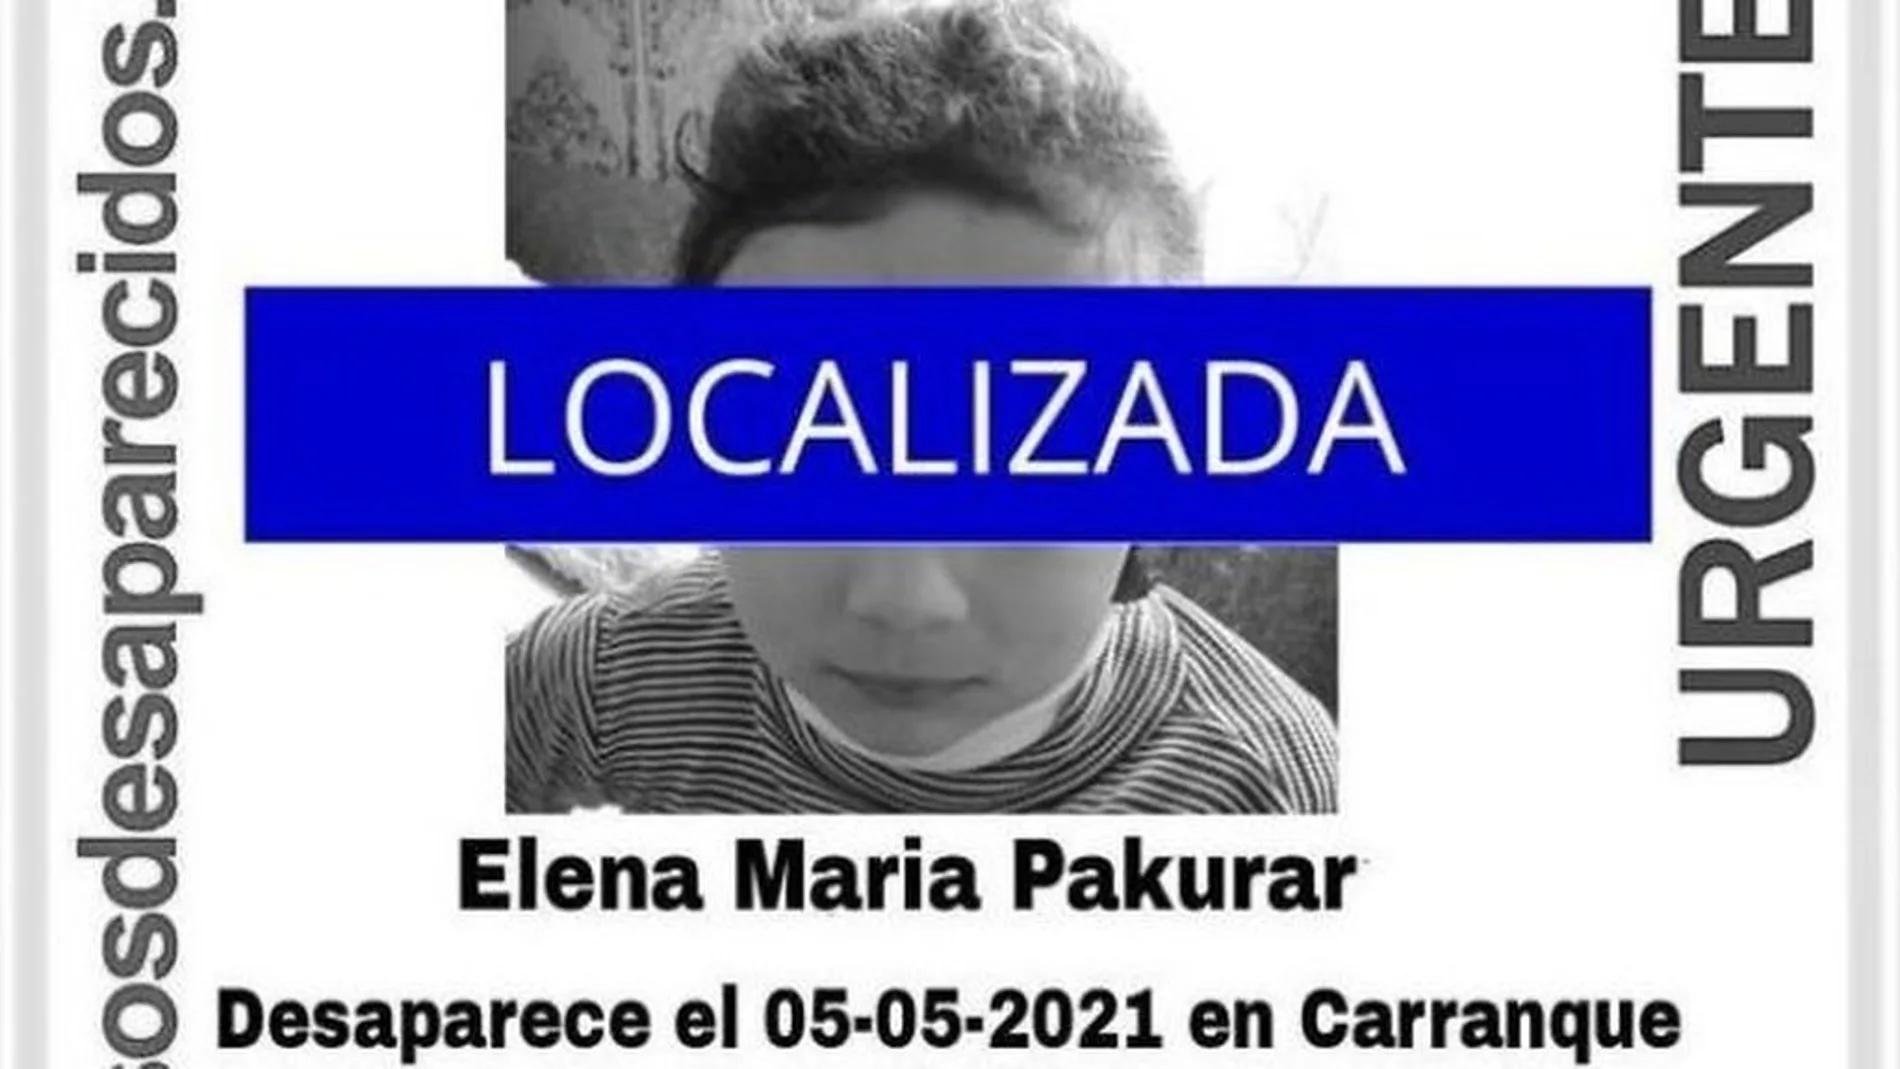 Elena Maria Pakurar, una niña localizada después de estar desaparecida